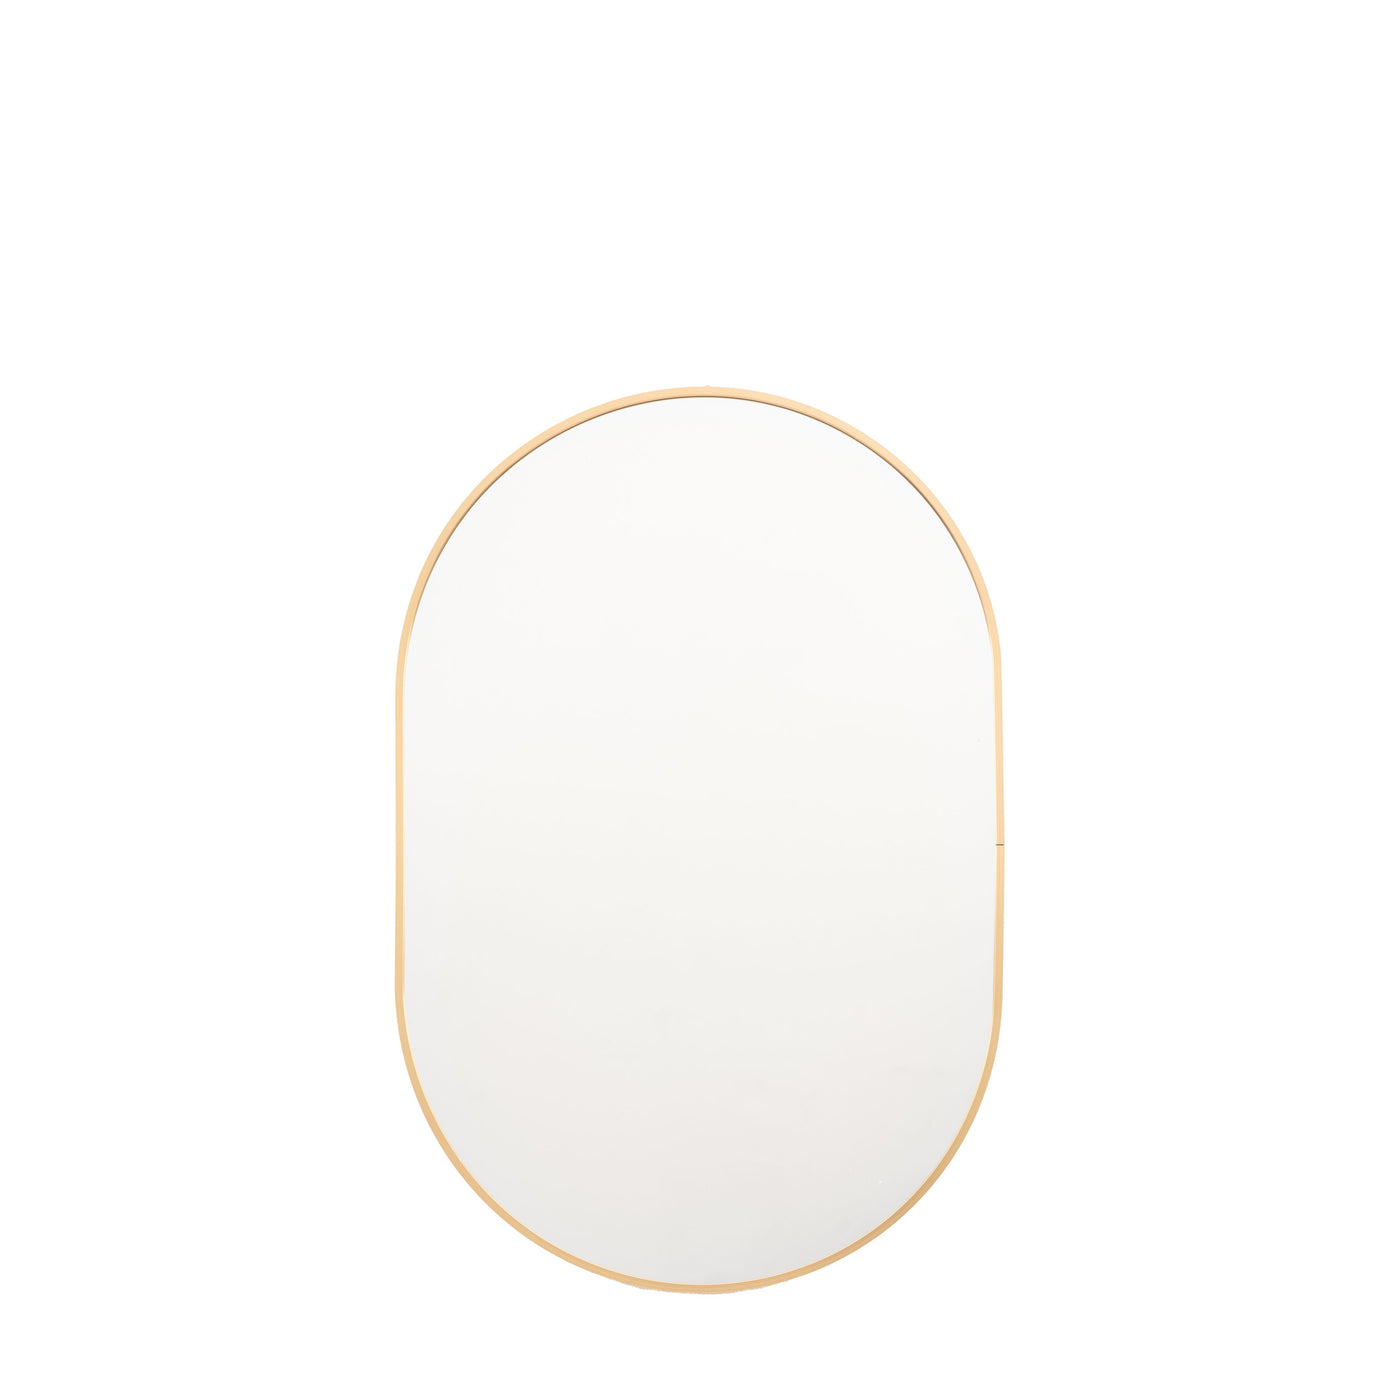 Boswyn Oval Gold Mirror - Small